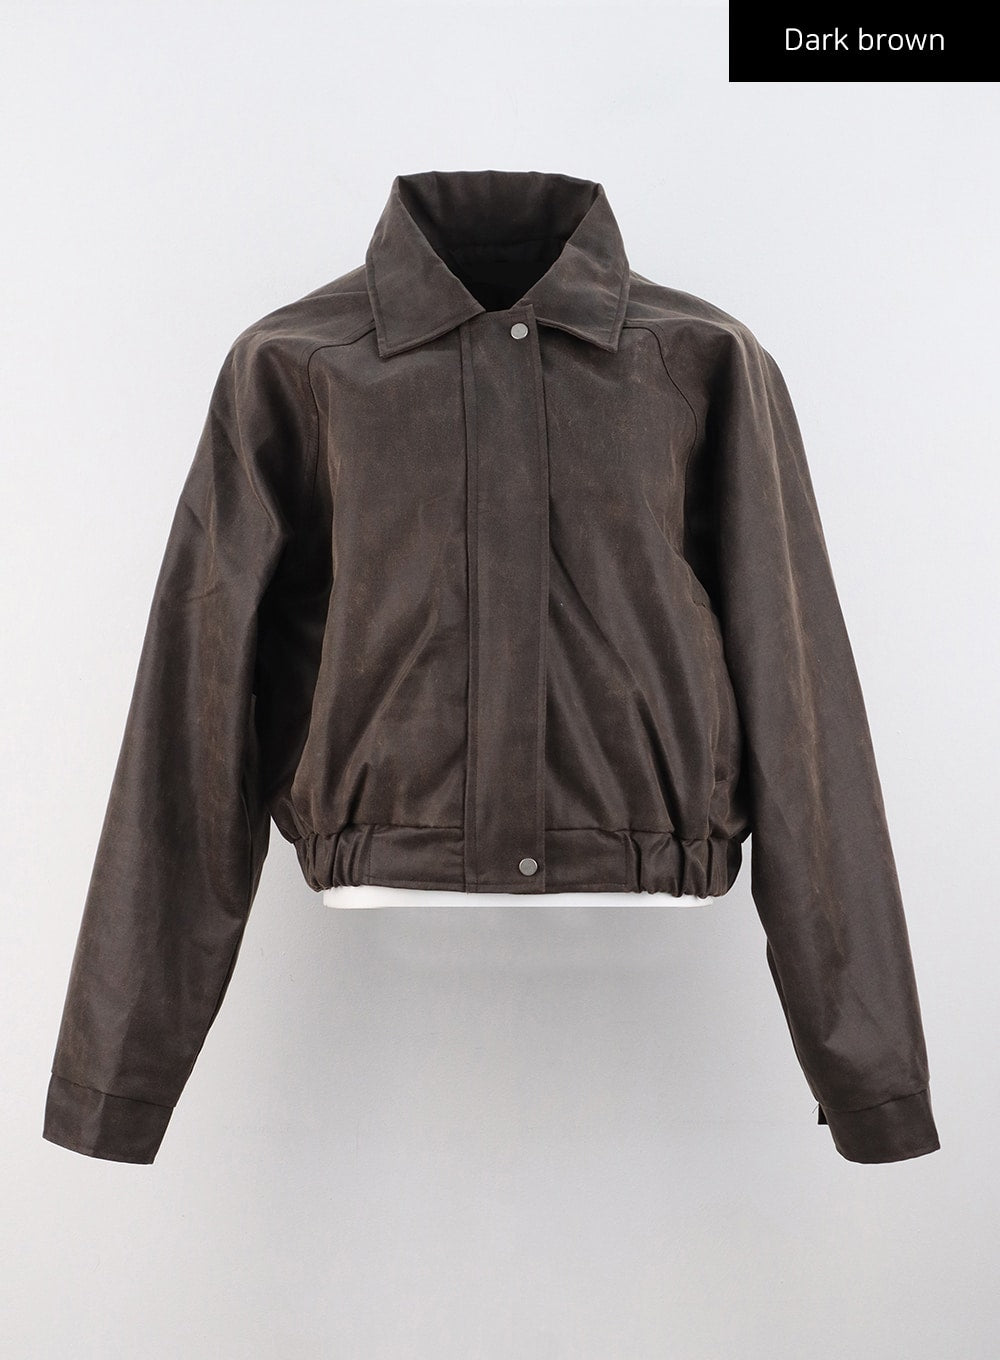 vintage lether bomber jacket dark brown着丈約64センチ